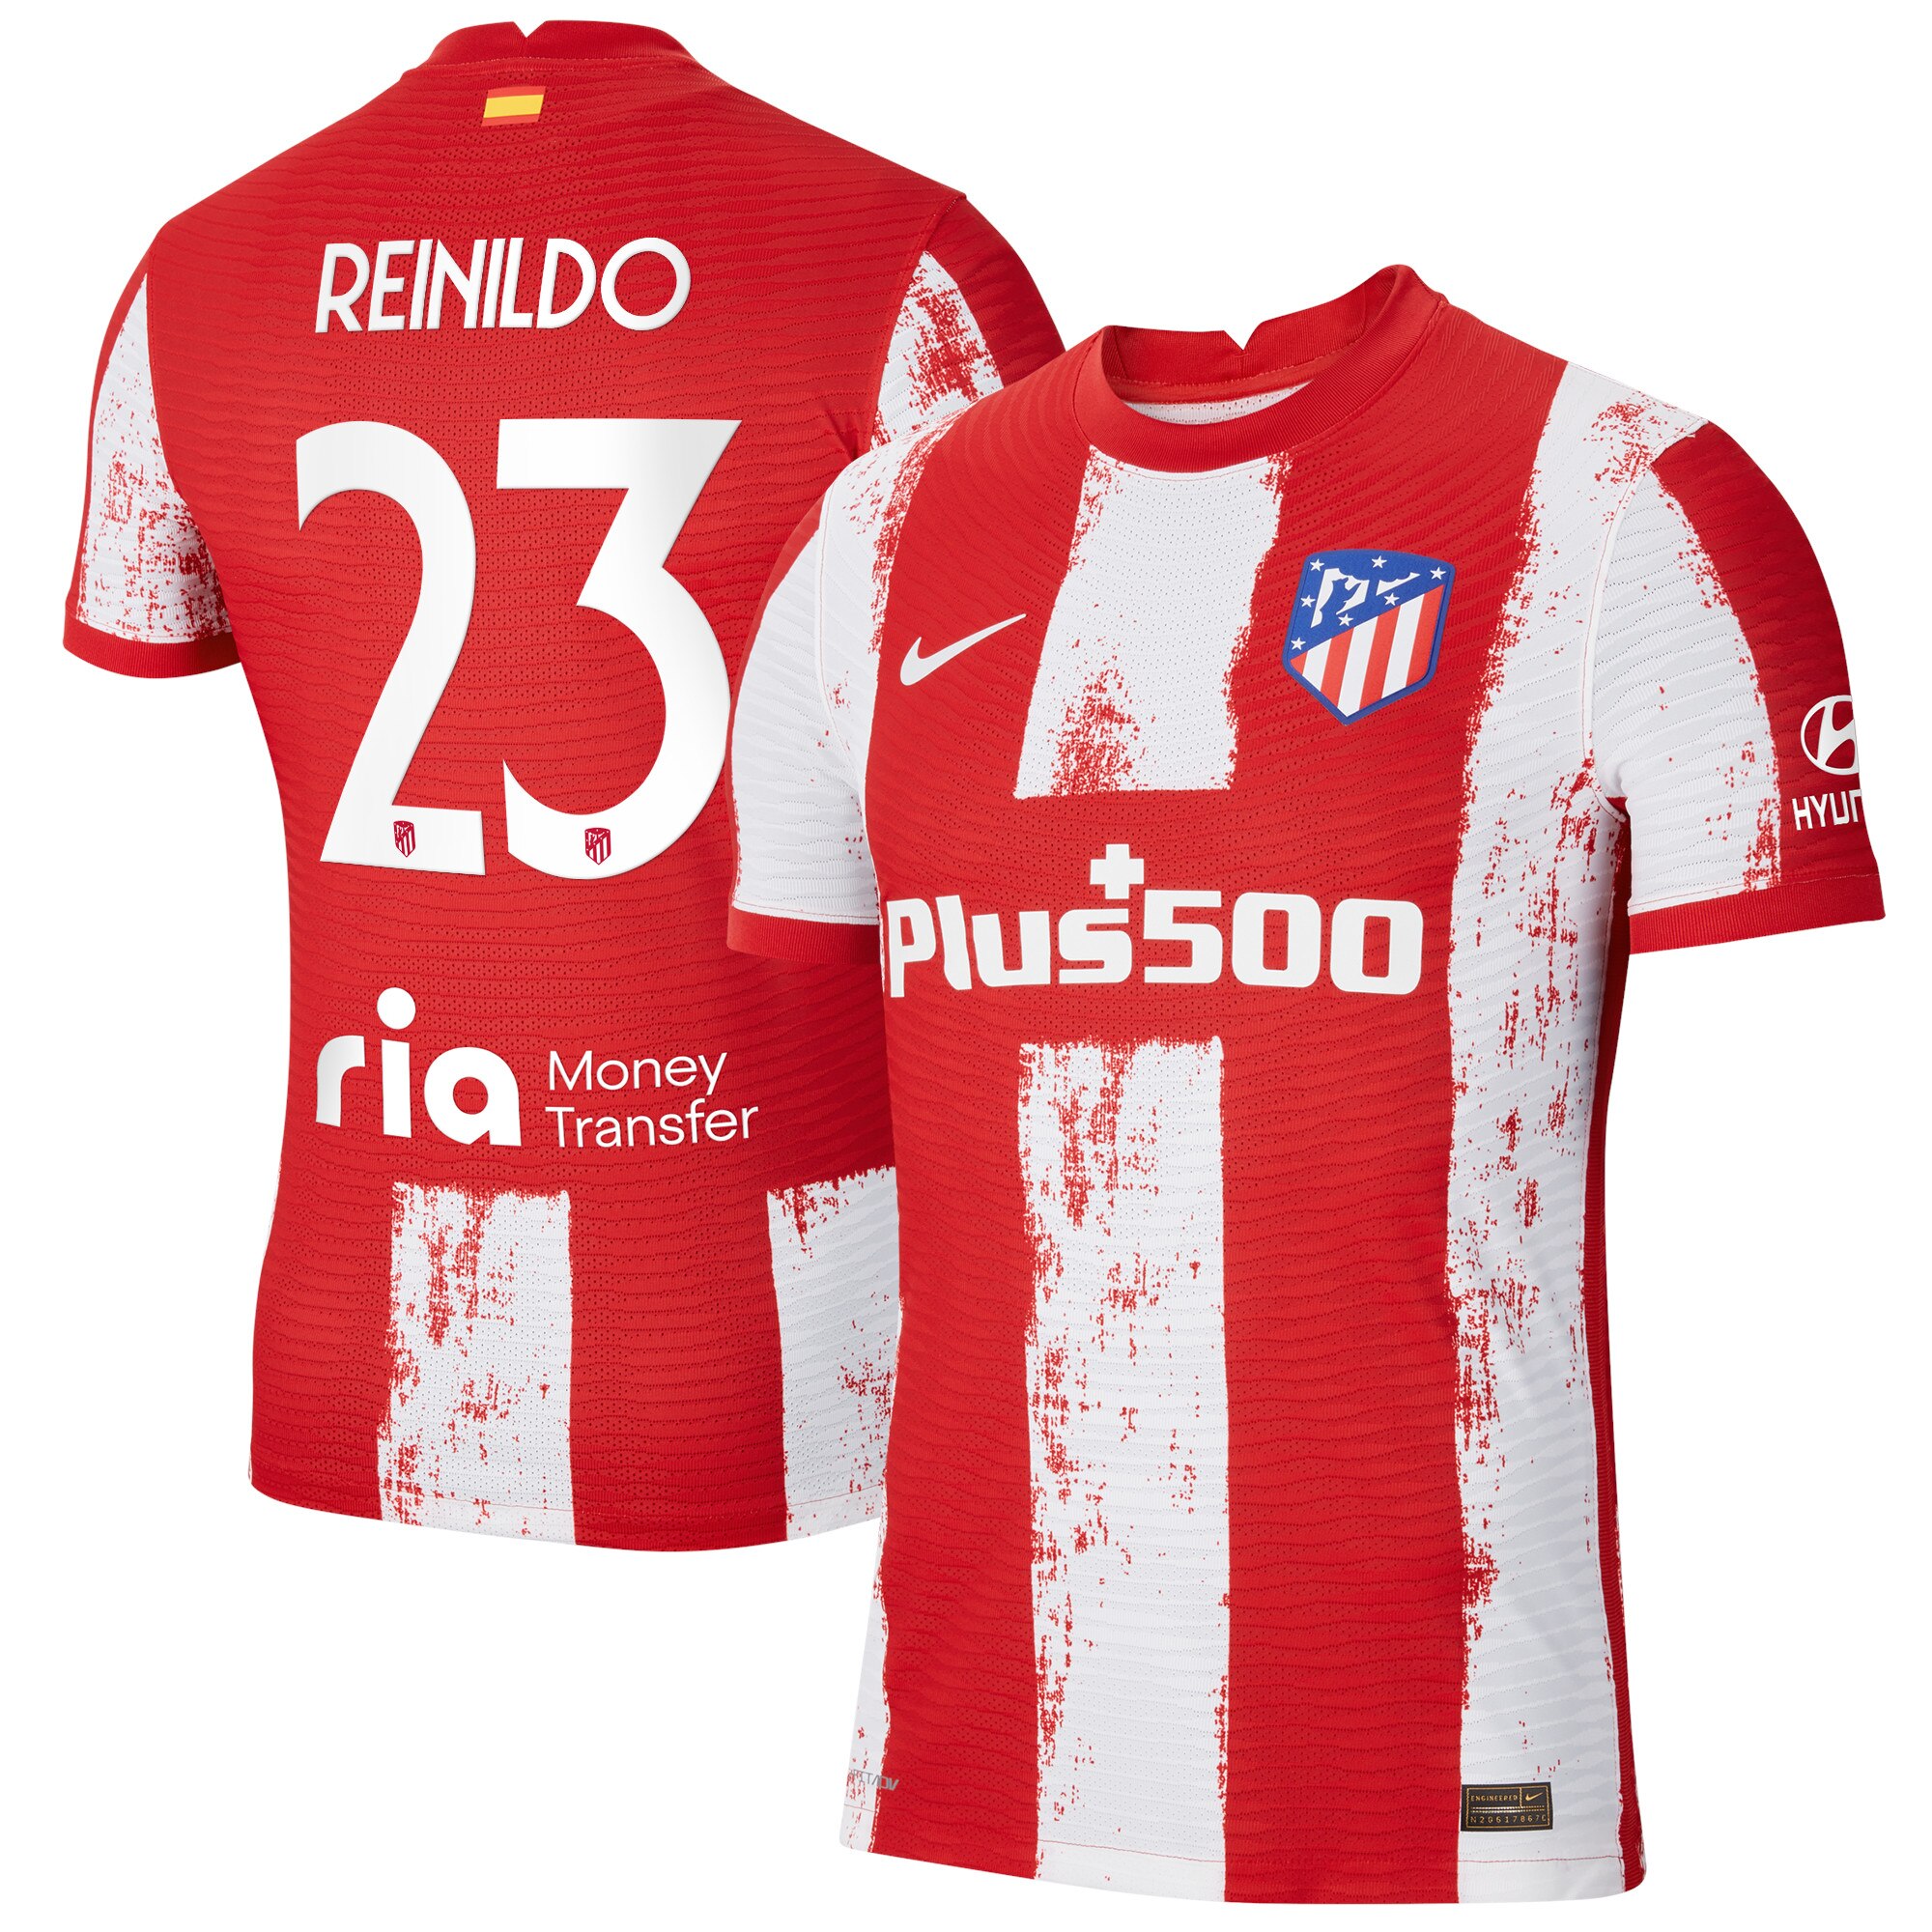 Atlético de Madrid Metropolitano Home Vapor Match Shirt 2021-22 with Reinildo 23 printing